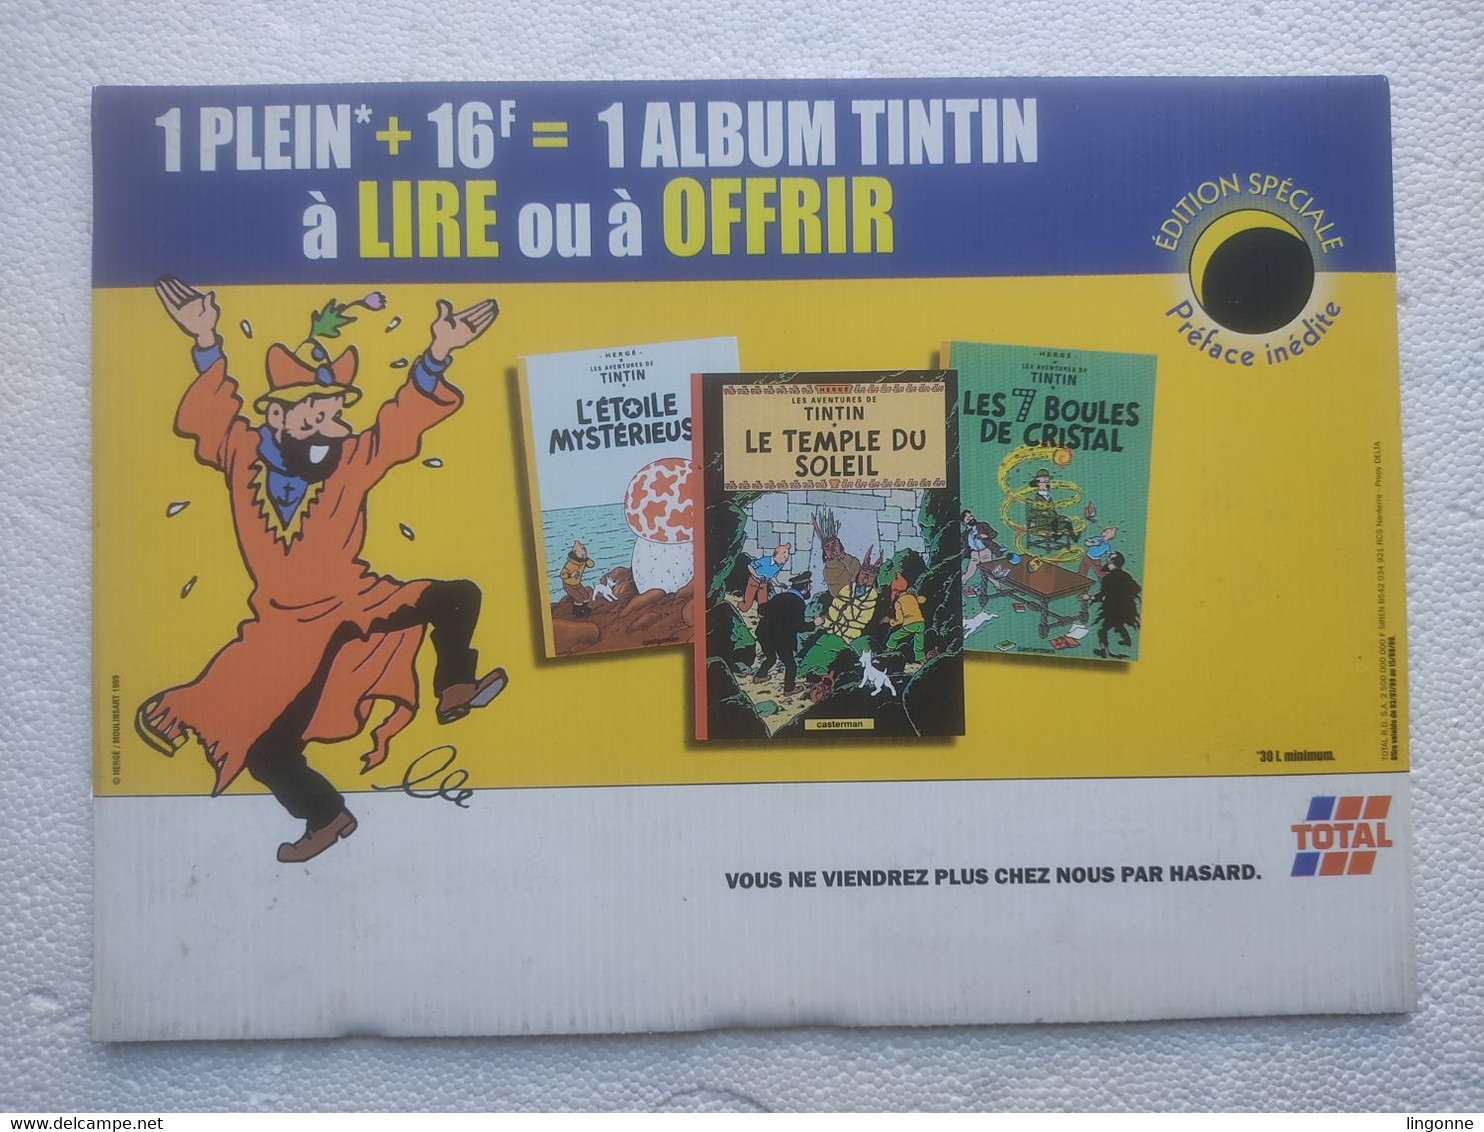 1999 TINTIN PANNEAU PUBLICITAIRE Plastique TOTAL Publicité Sur Point De Vente CAPITAINE HADDOCK Hergé Moulinsart 1999 - Afiches & Offsets